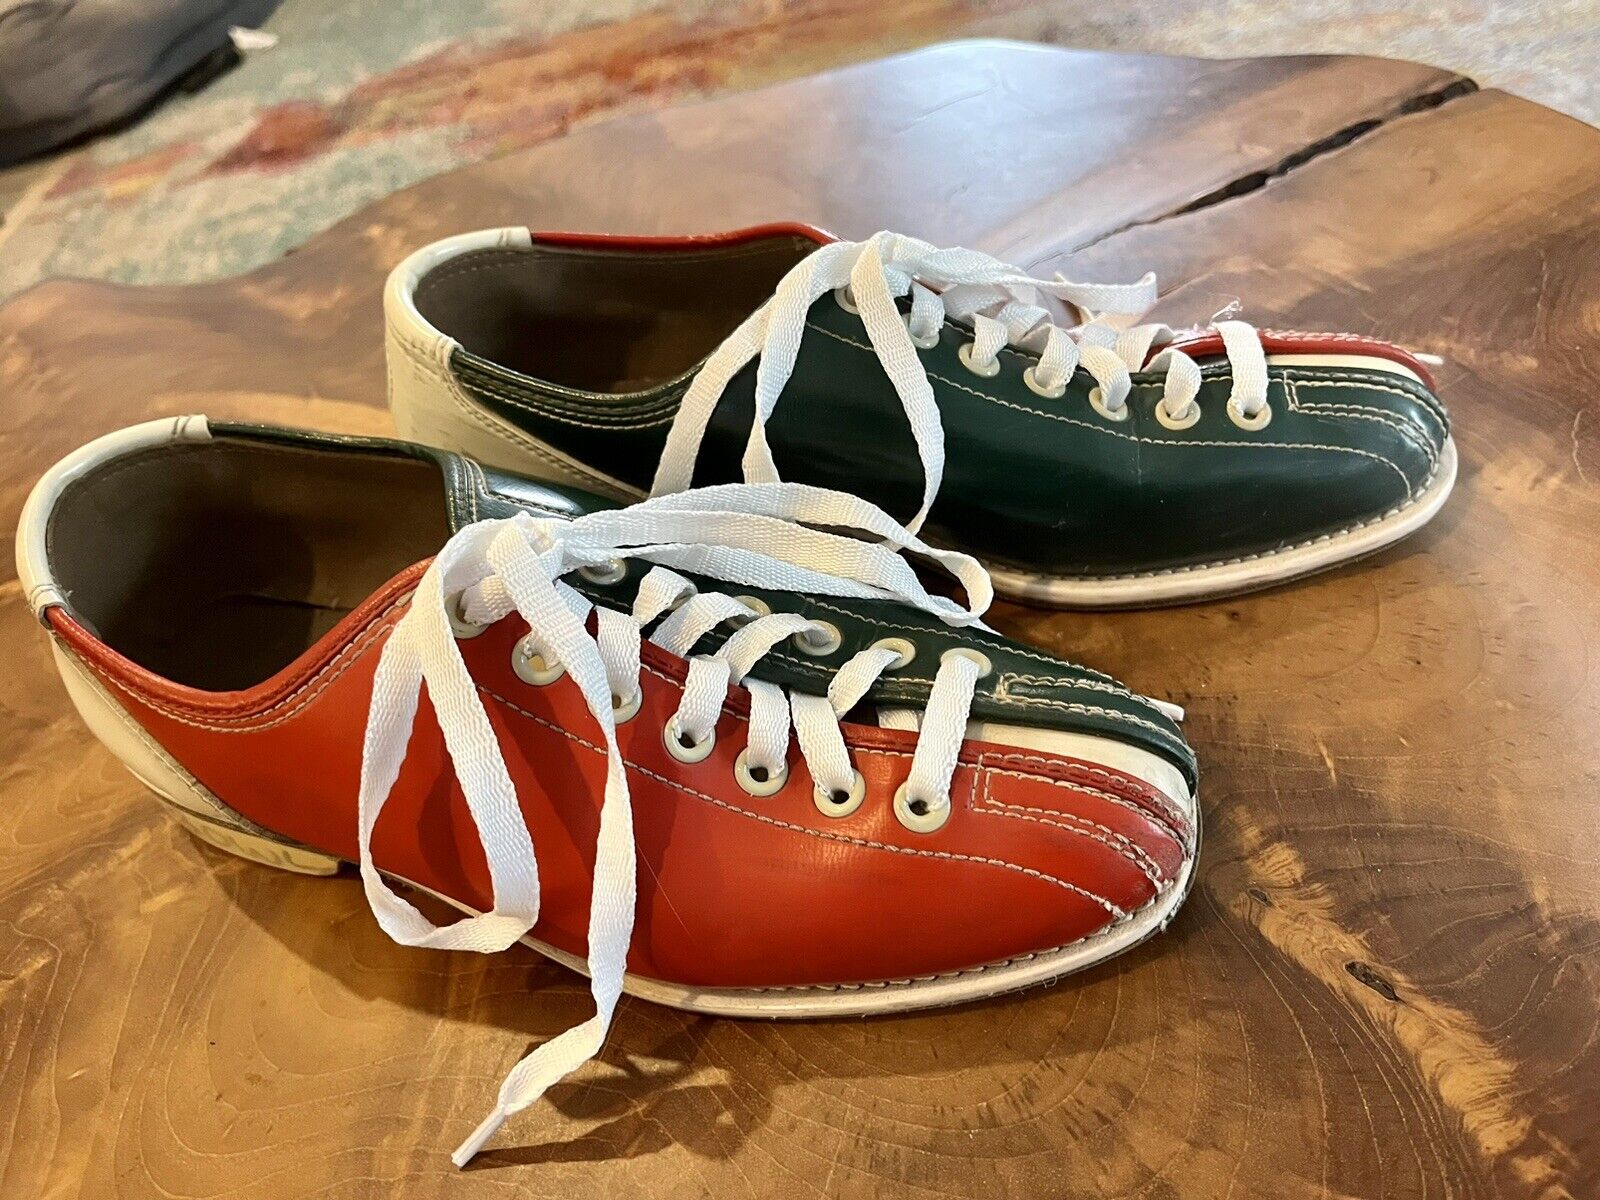 Vintage Rental Bowling Shoes Brunswick Men's Size 7 Red White